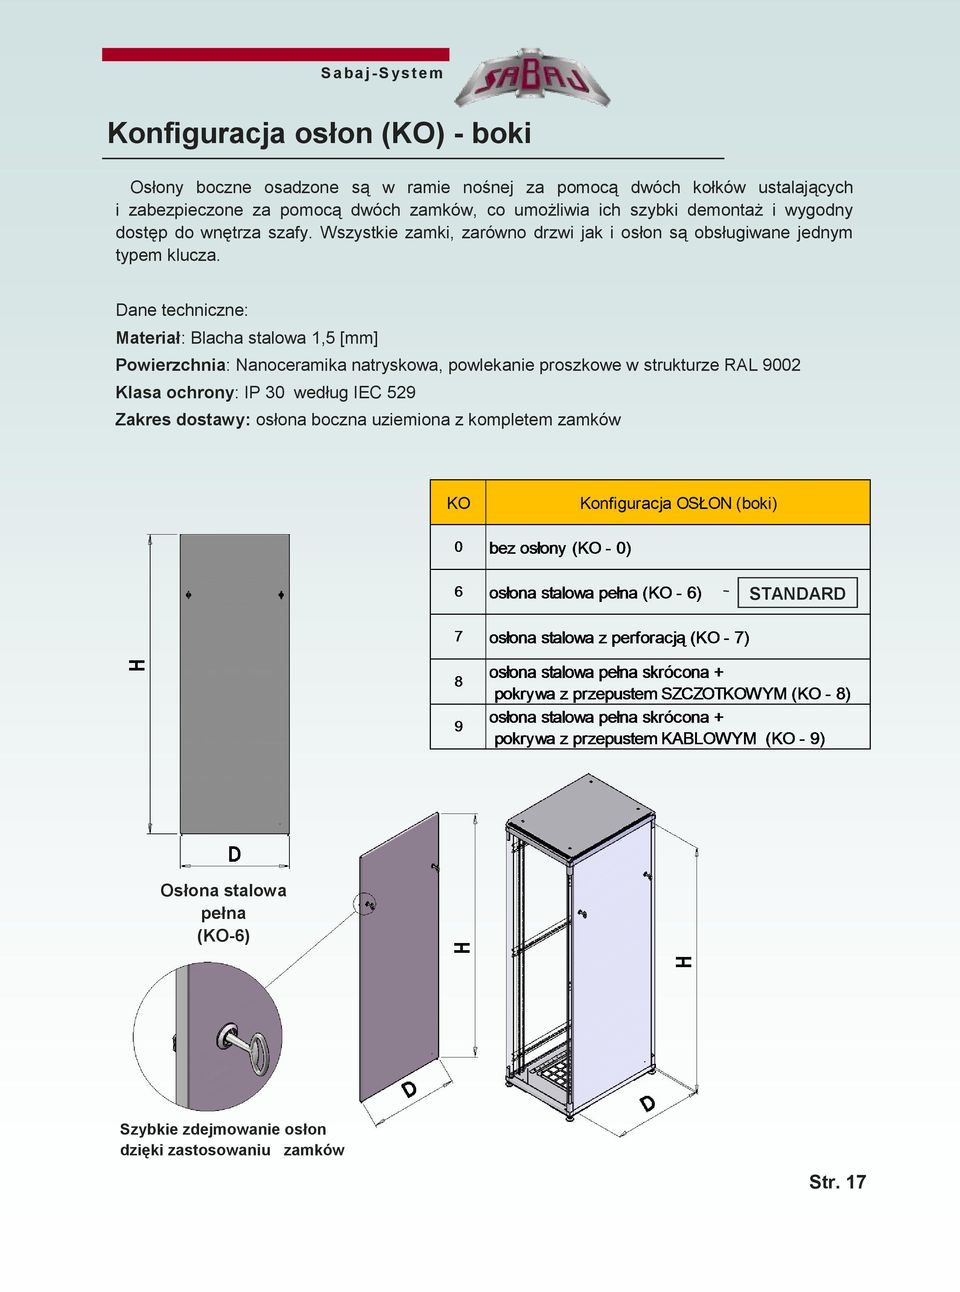 Dane techniczne: Materiał: Blacha stalowa 1,5 [mm] Powierzchnia: Nanoceramika natryskowa, powlekanie proszkowe w strukturze RAL 9002 Klasa ochrony: IP 30